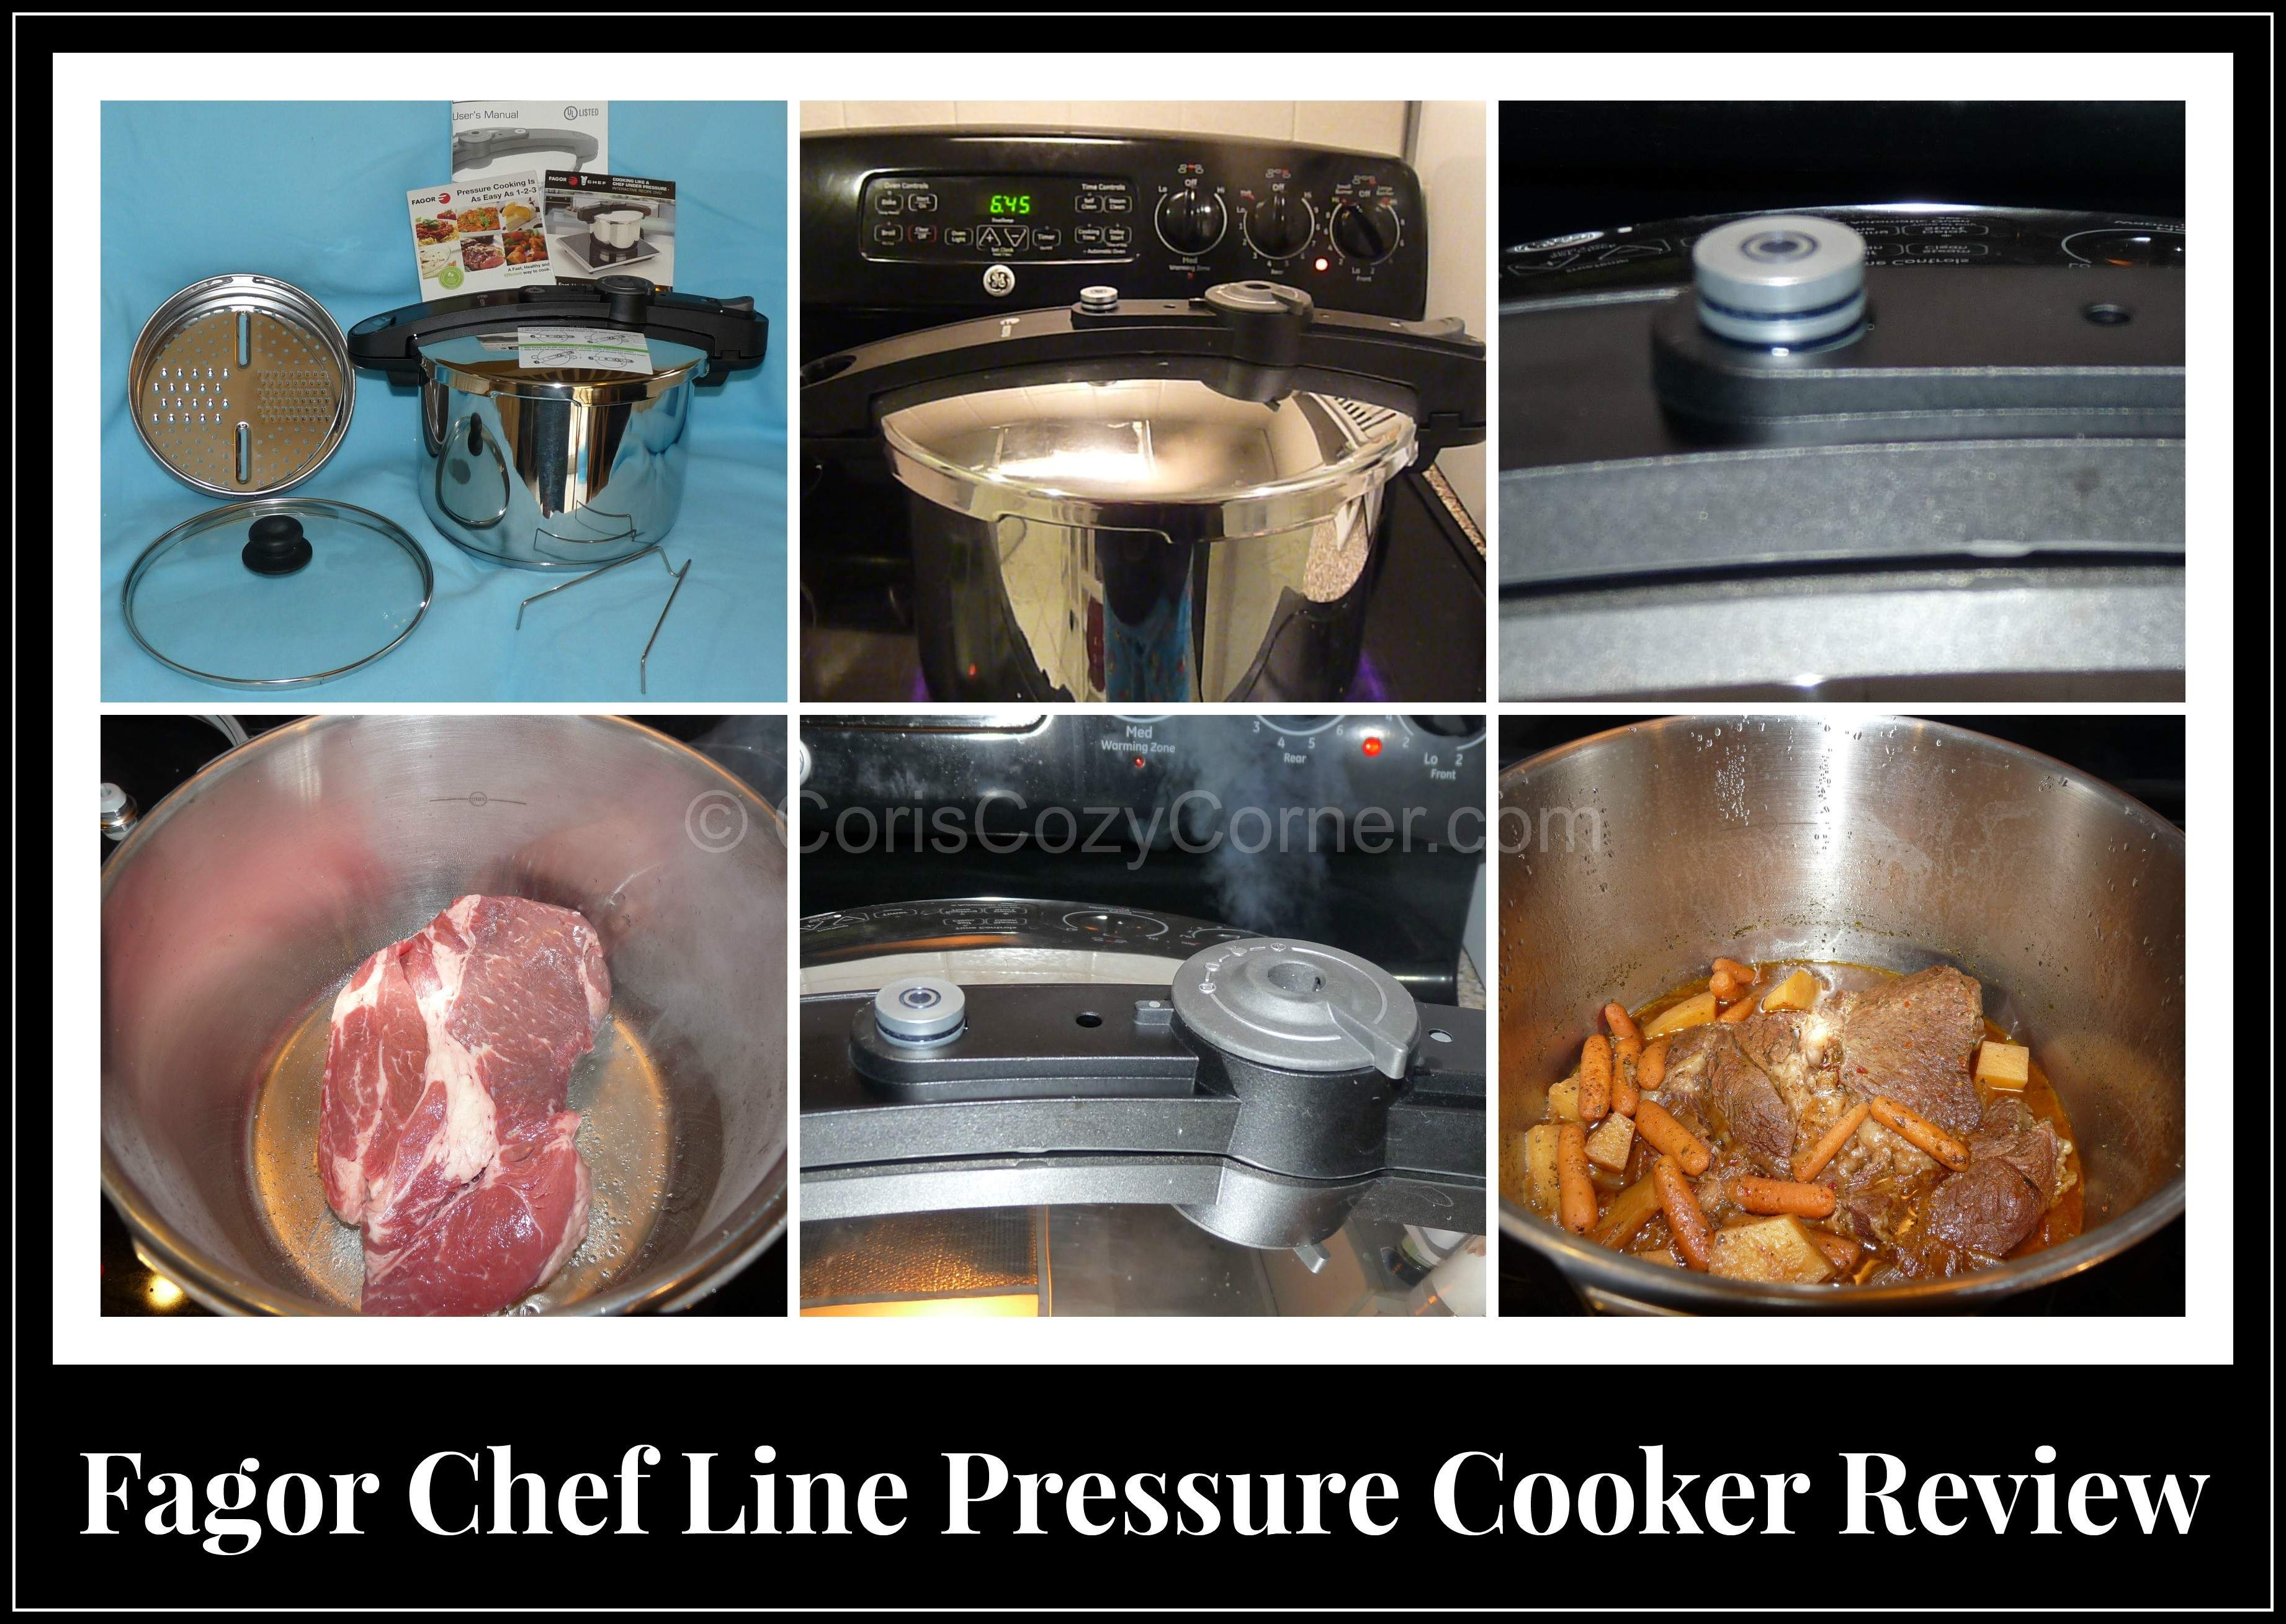 Fagor Chef Line Pressure Cooker Review - Cori's Cozy Corner